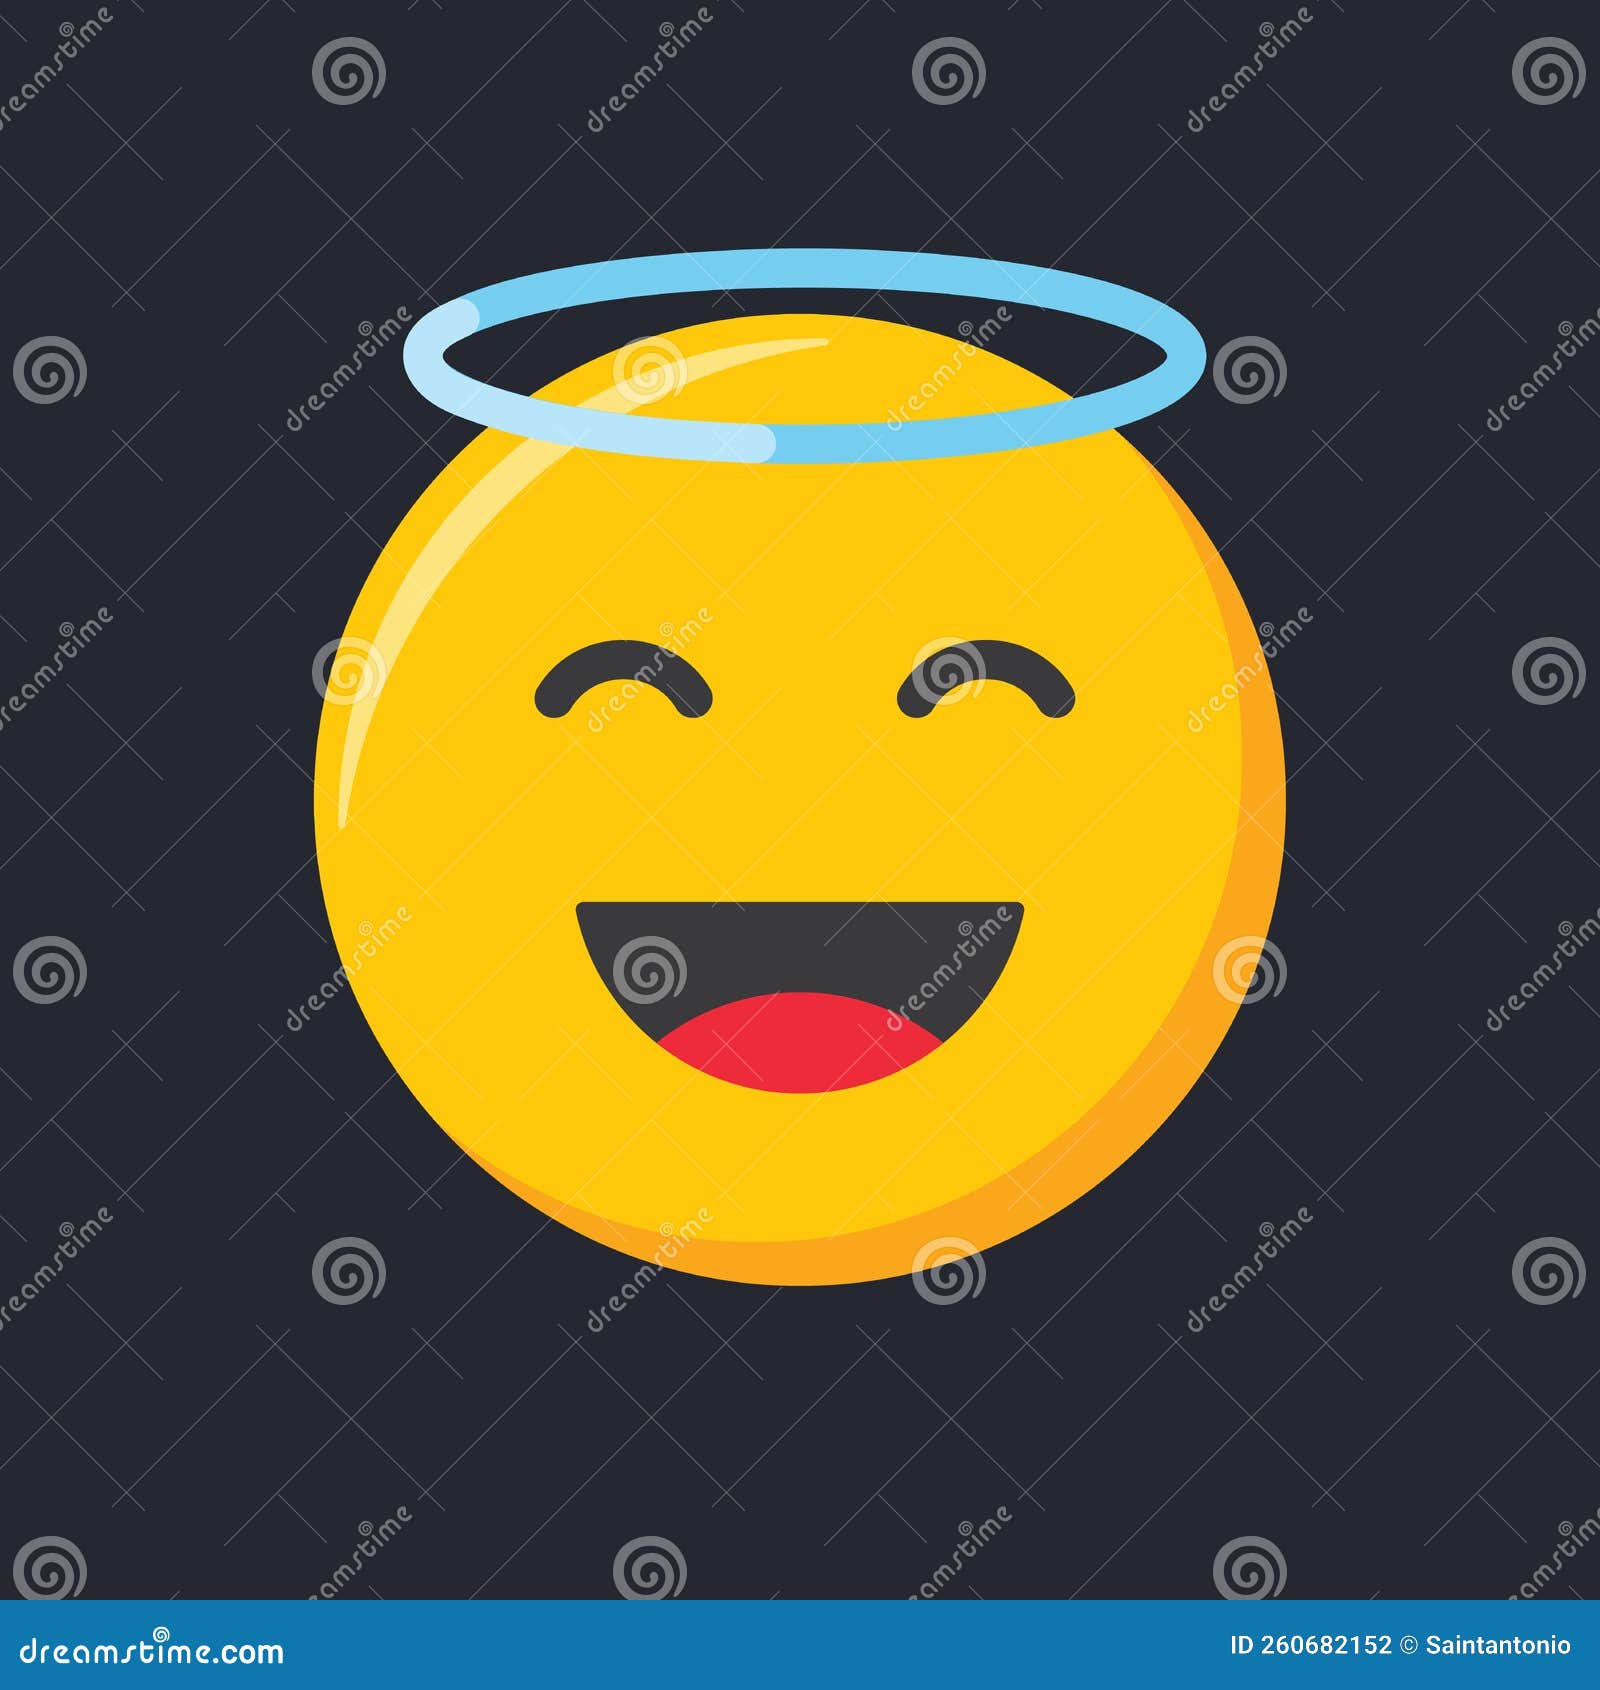 emoji icon. happy and smiling hace, angel emoticon  